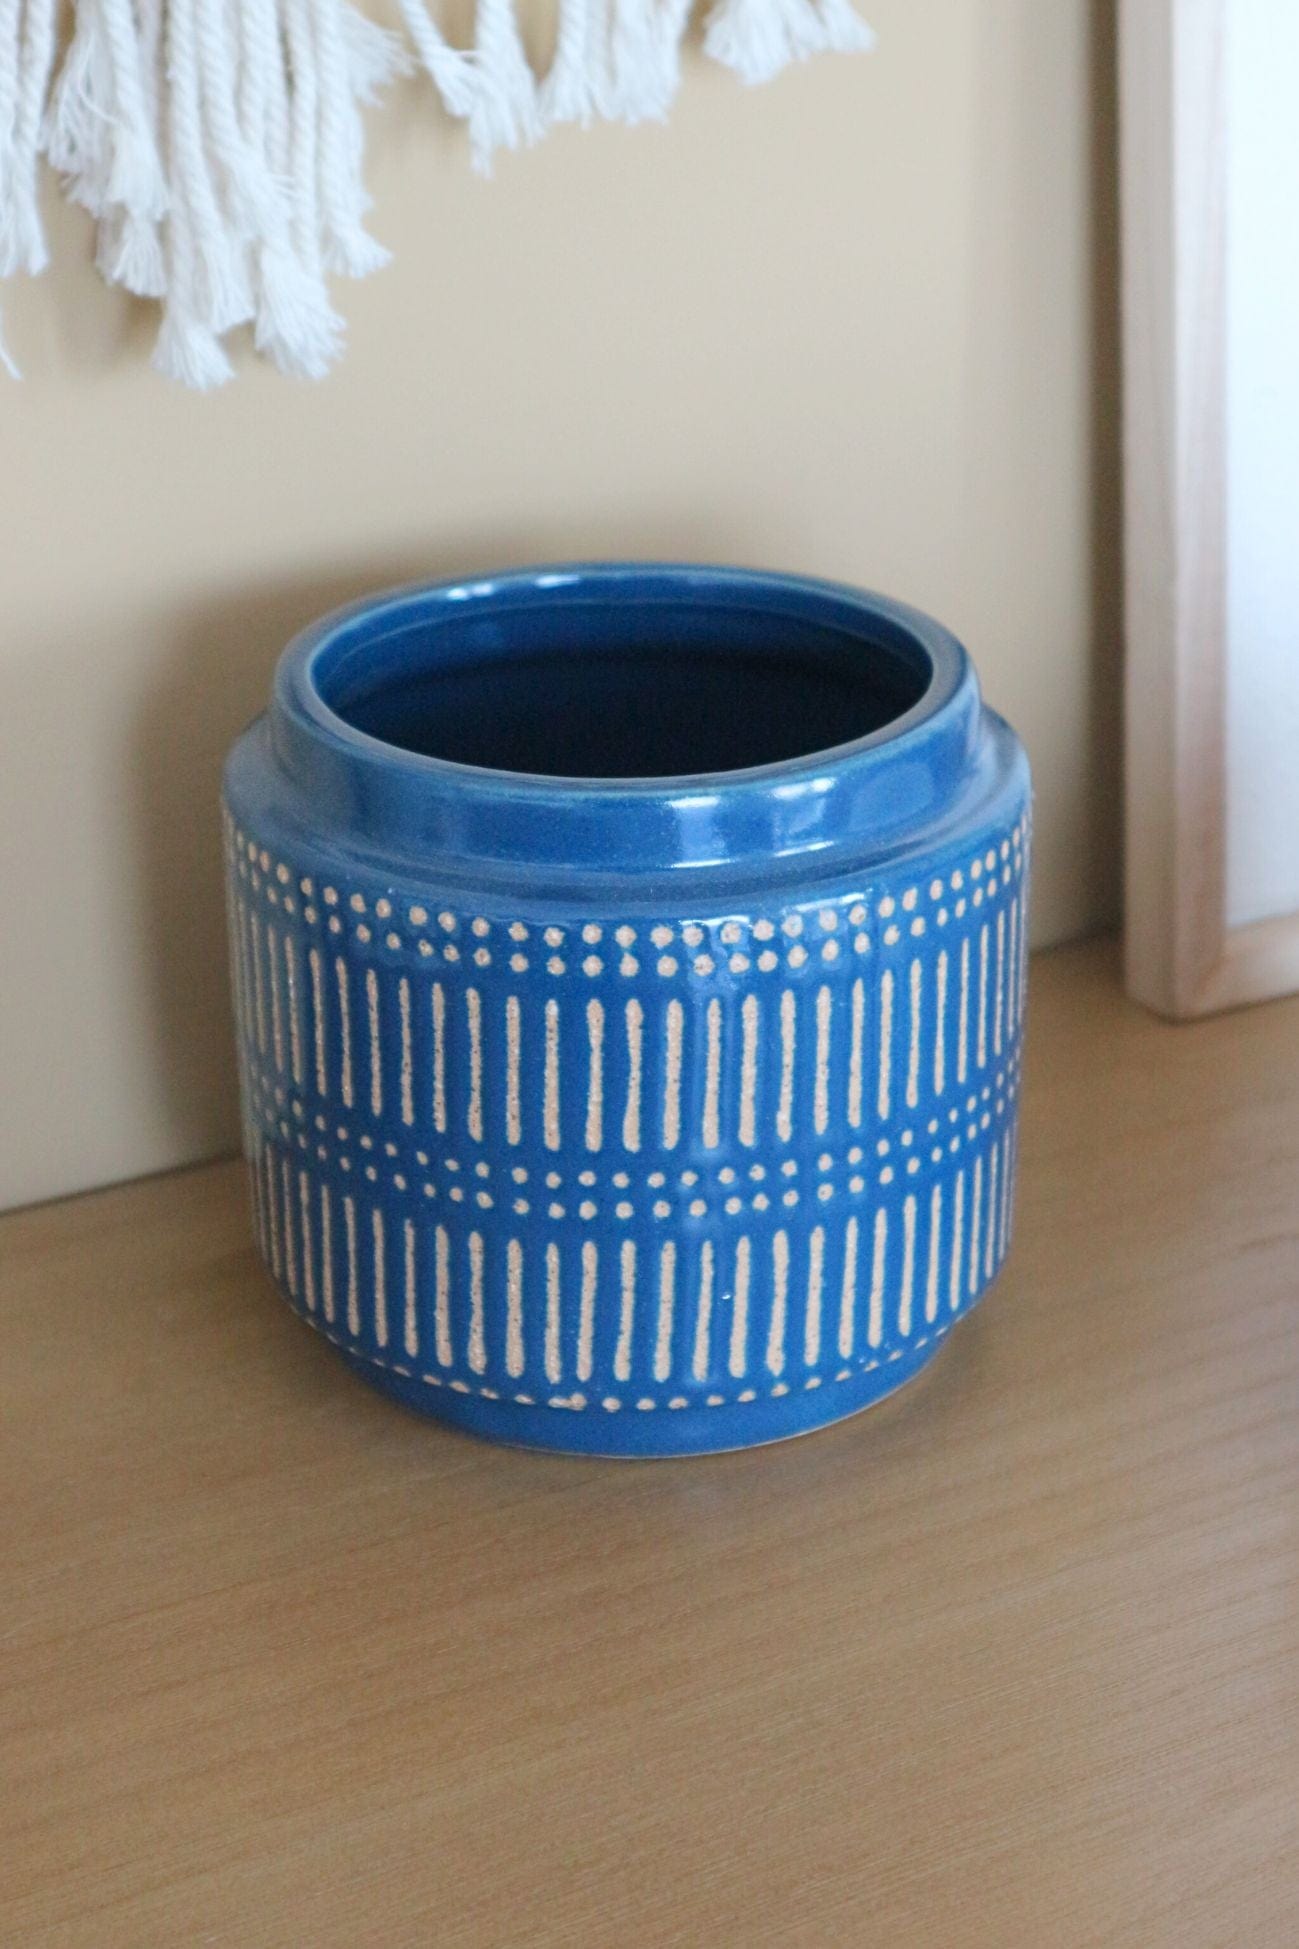 Item International Cedric Cedric - Vaso in ceramica blu e beige in stile orientale | Item International